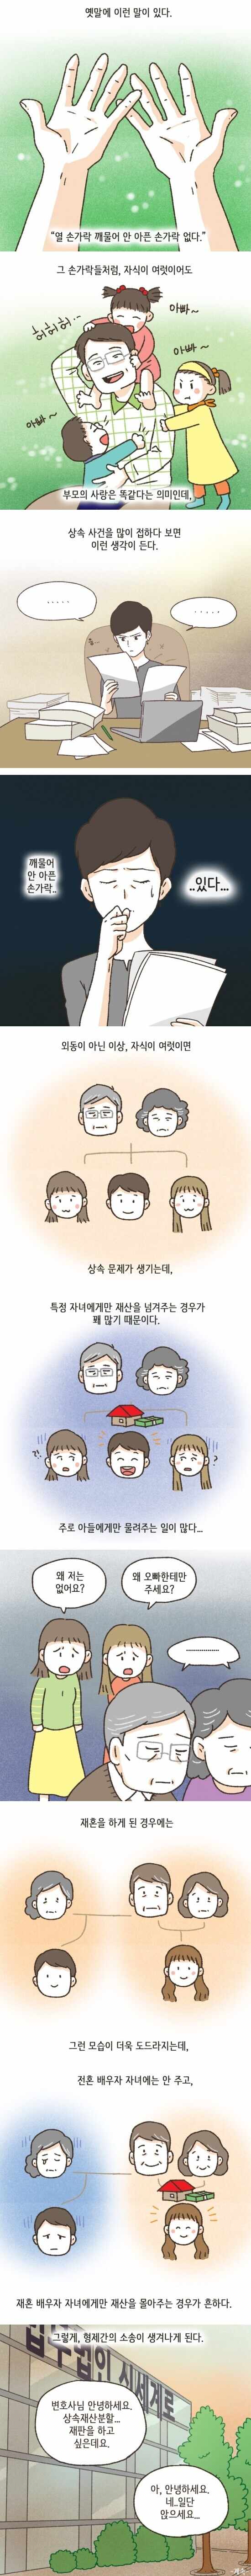 9 유산상속 소송의 현실.jpg